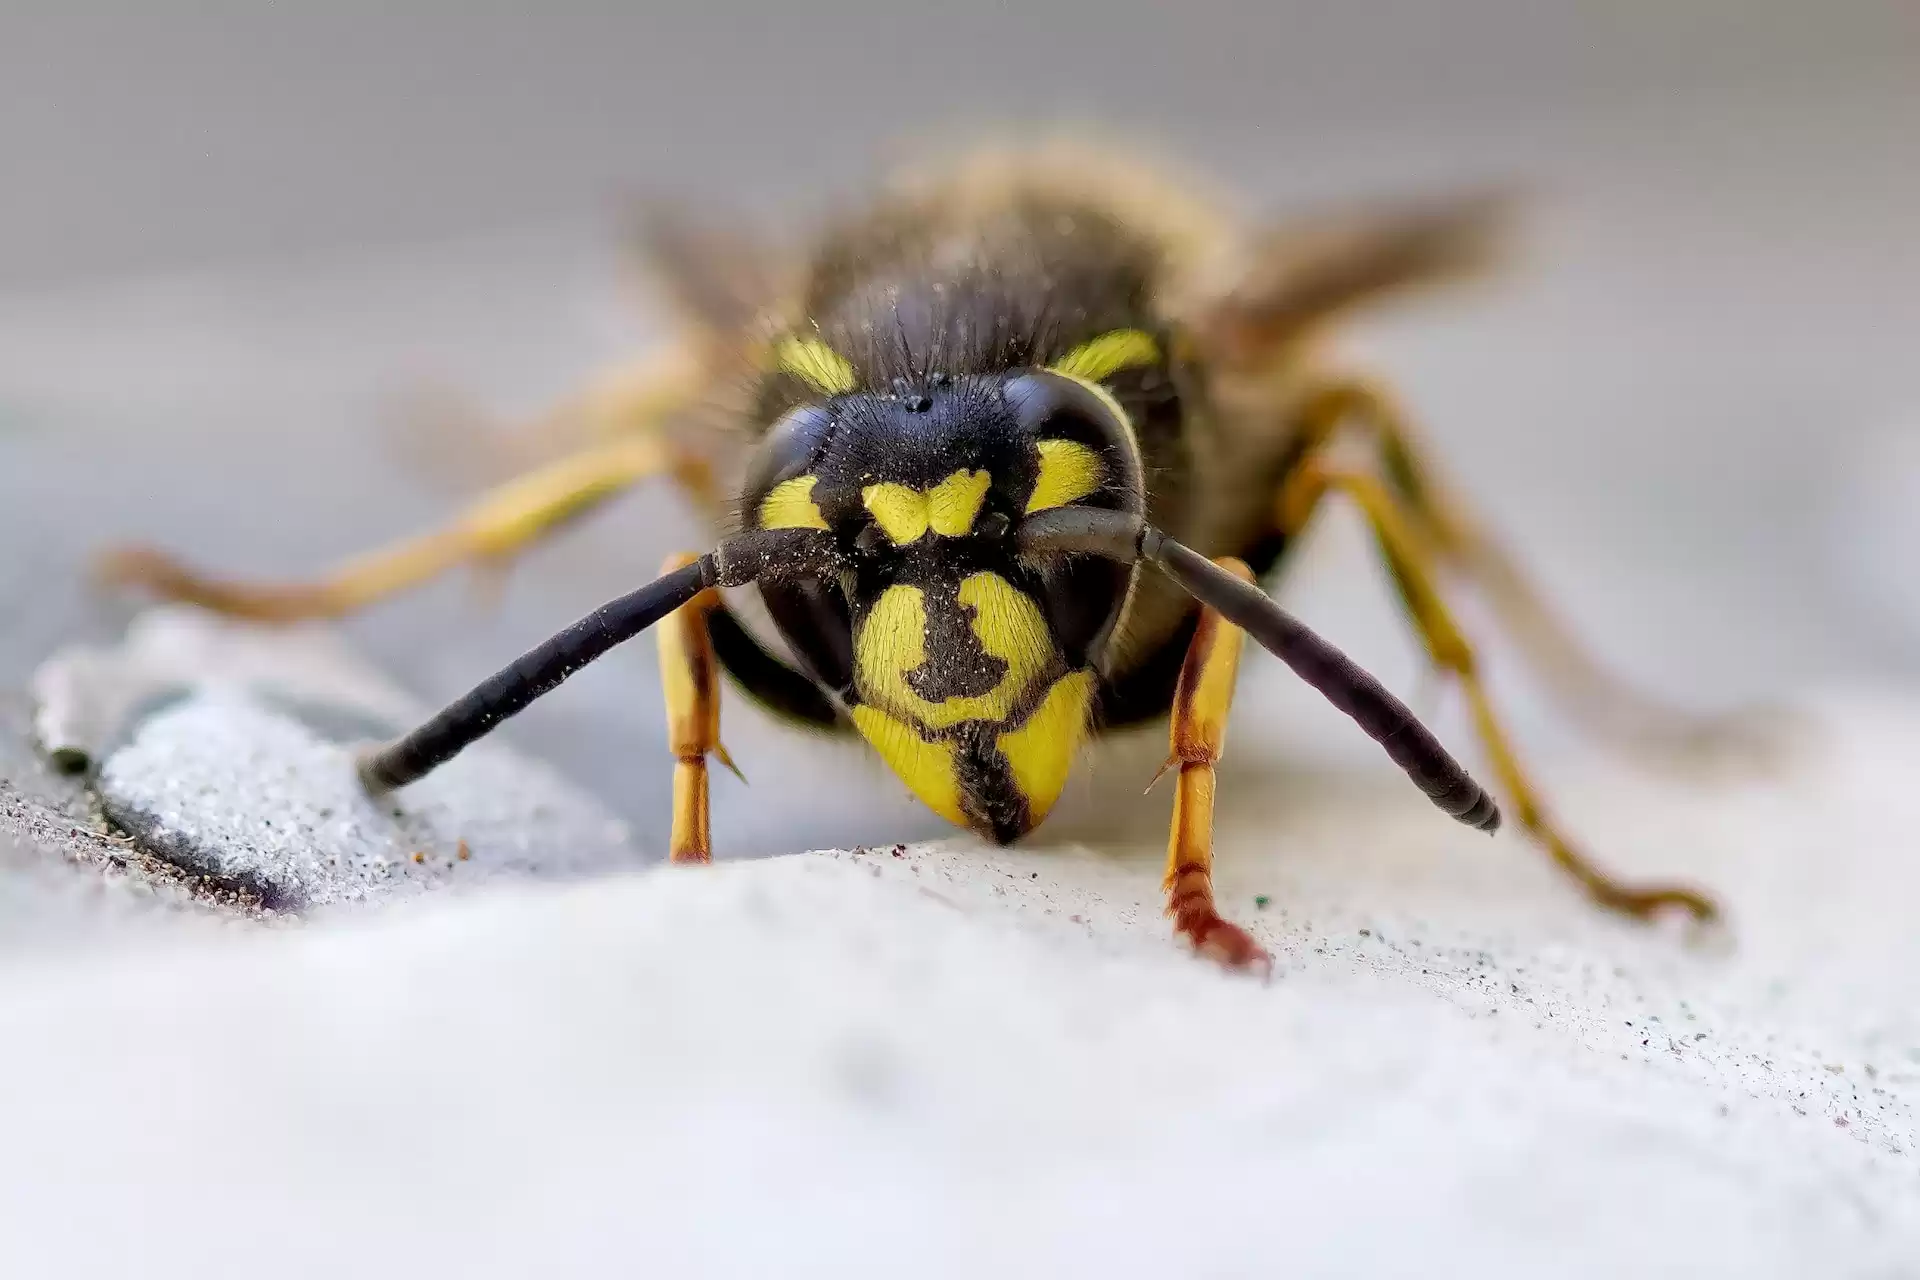 A wasp up close